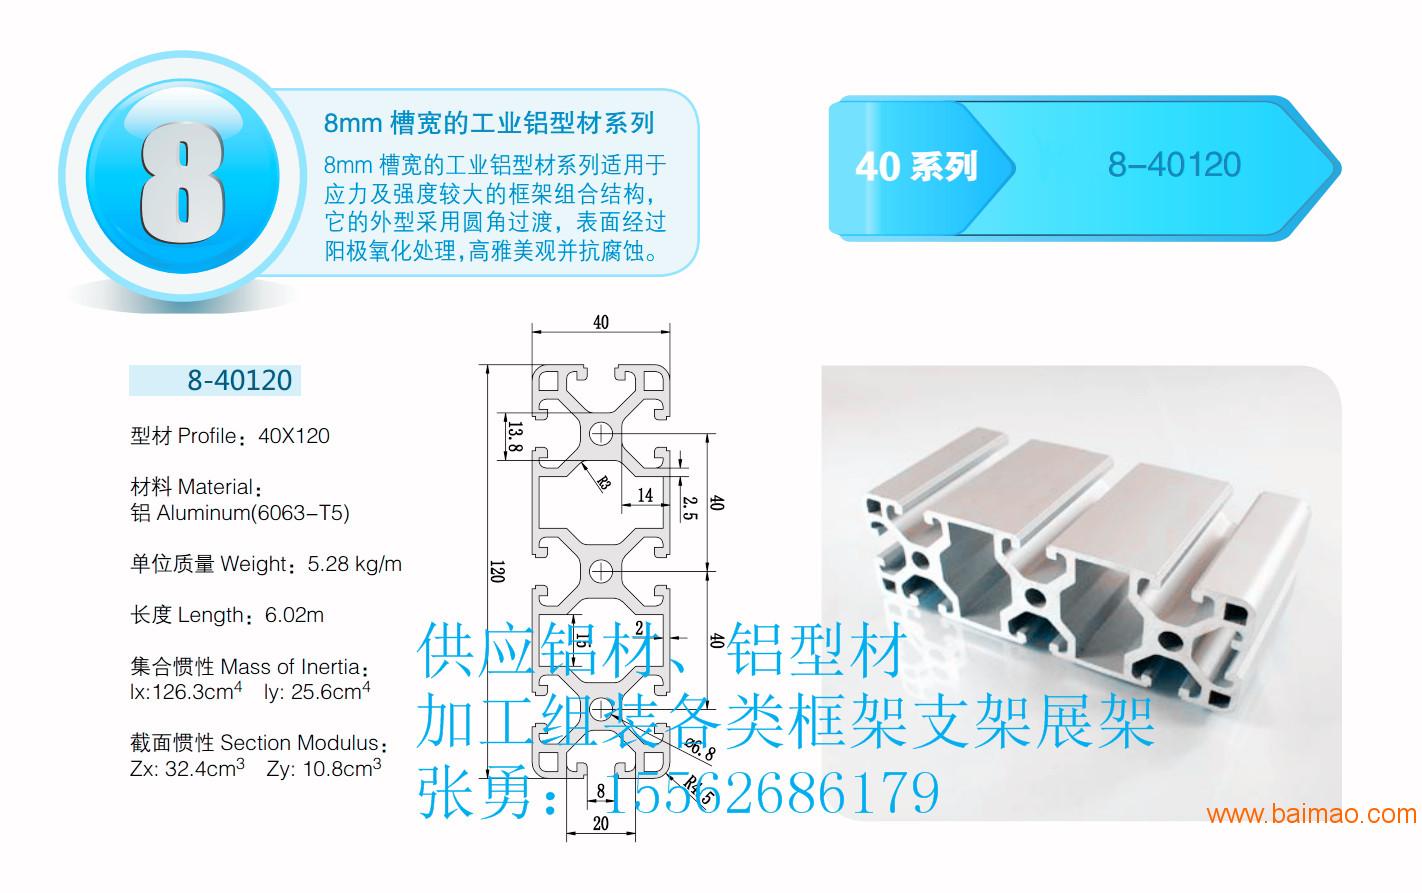 济南铝型材加工非标设备厂家济南聚格铝型材厂家